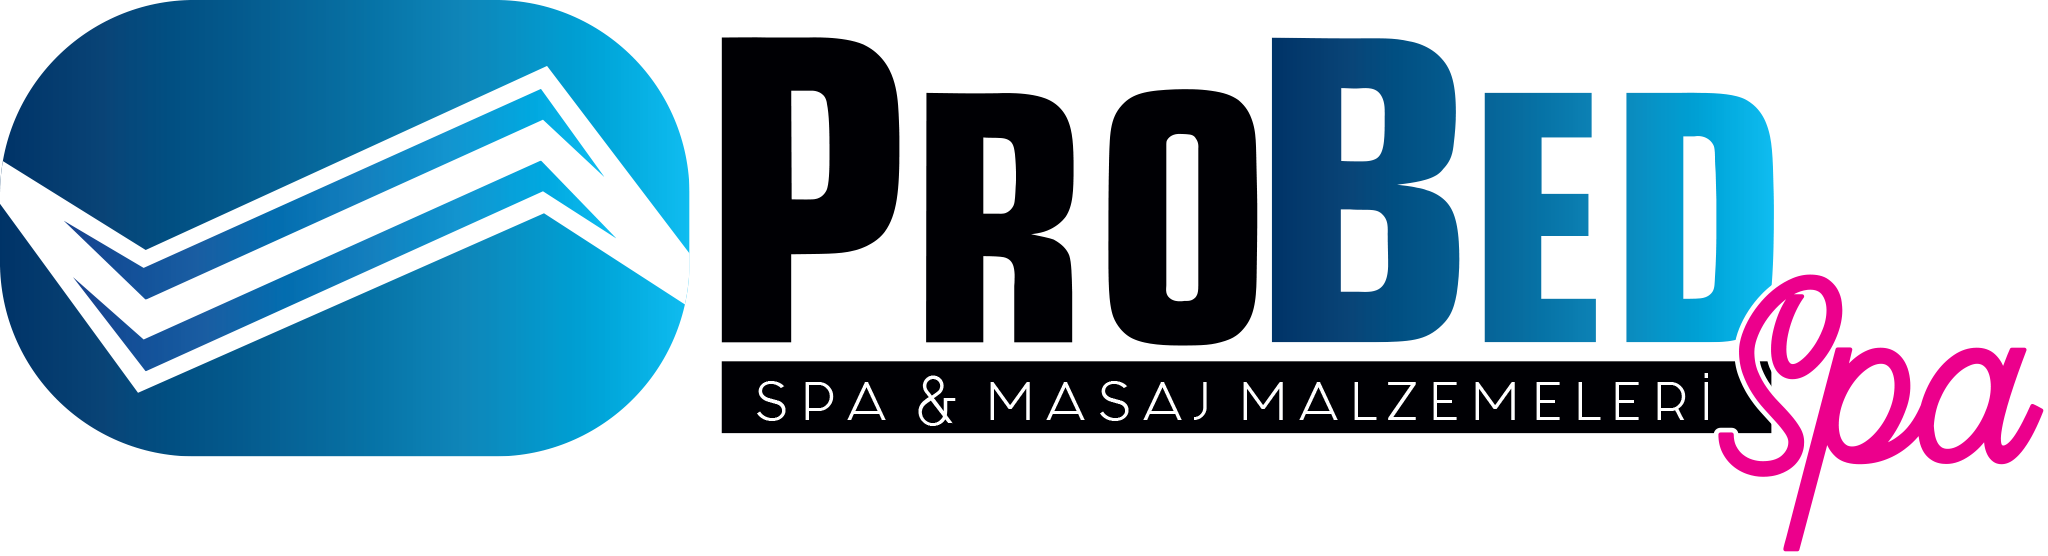 Probed Spa Logo